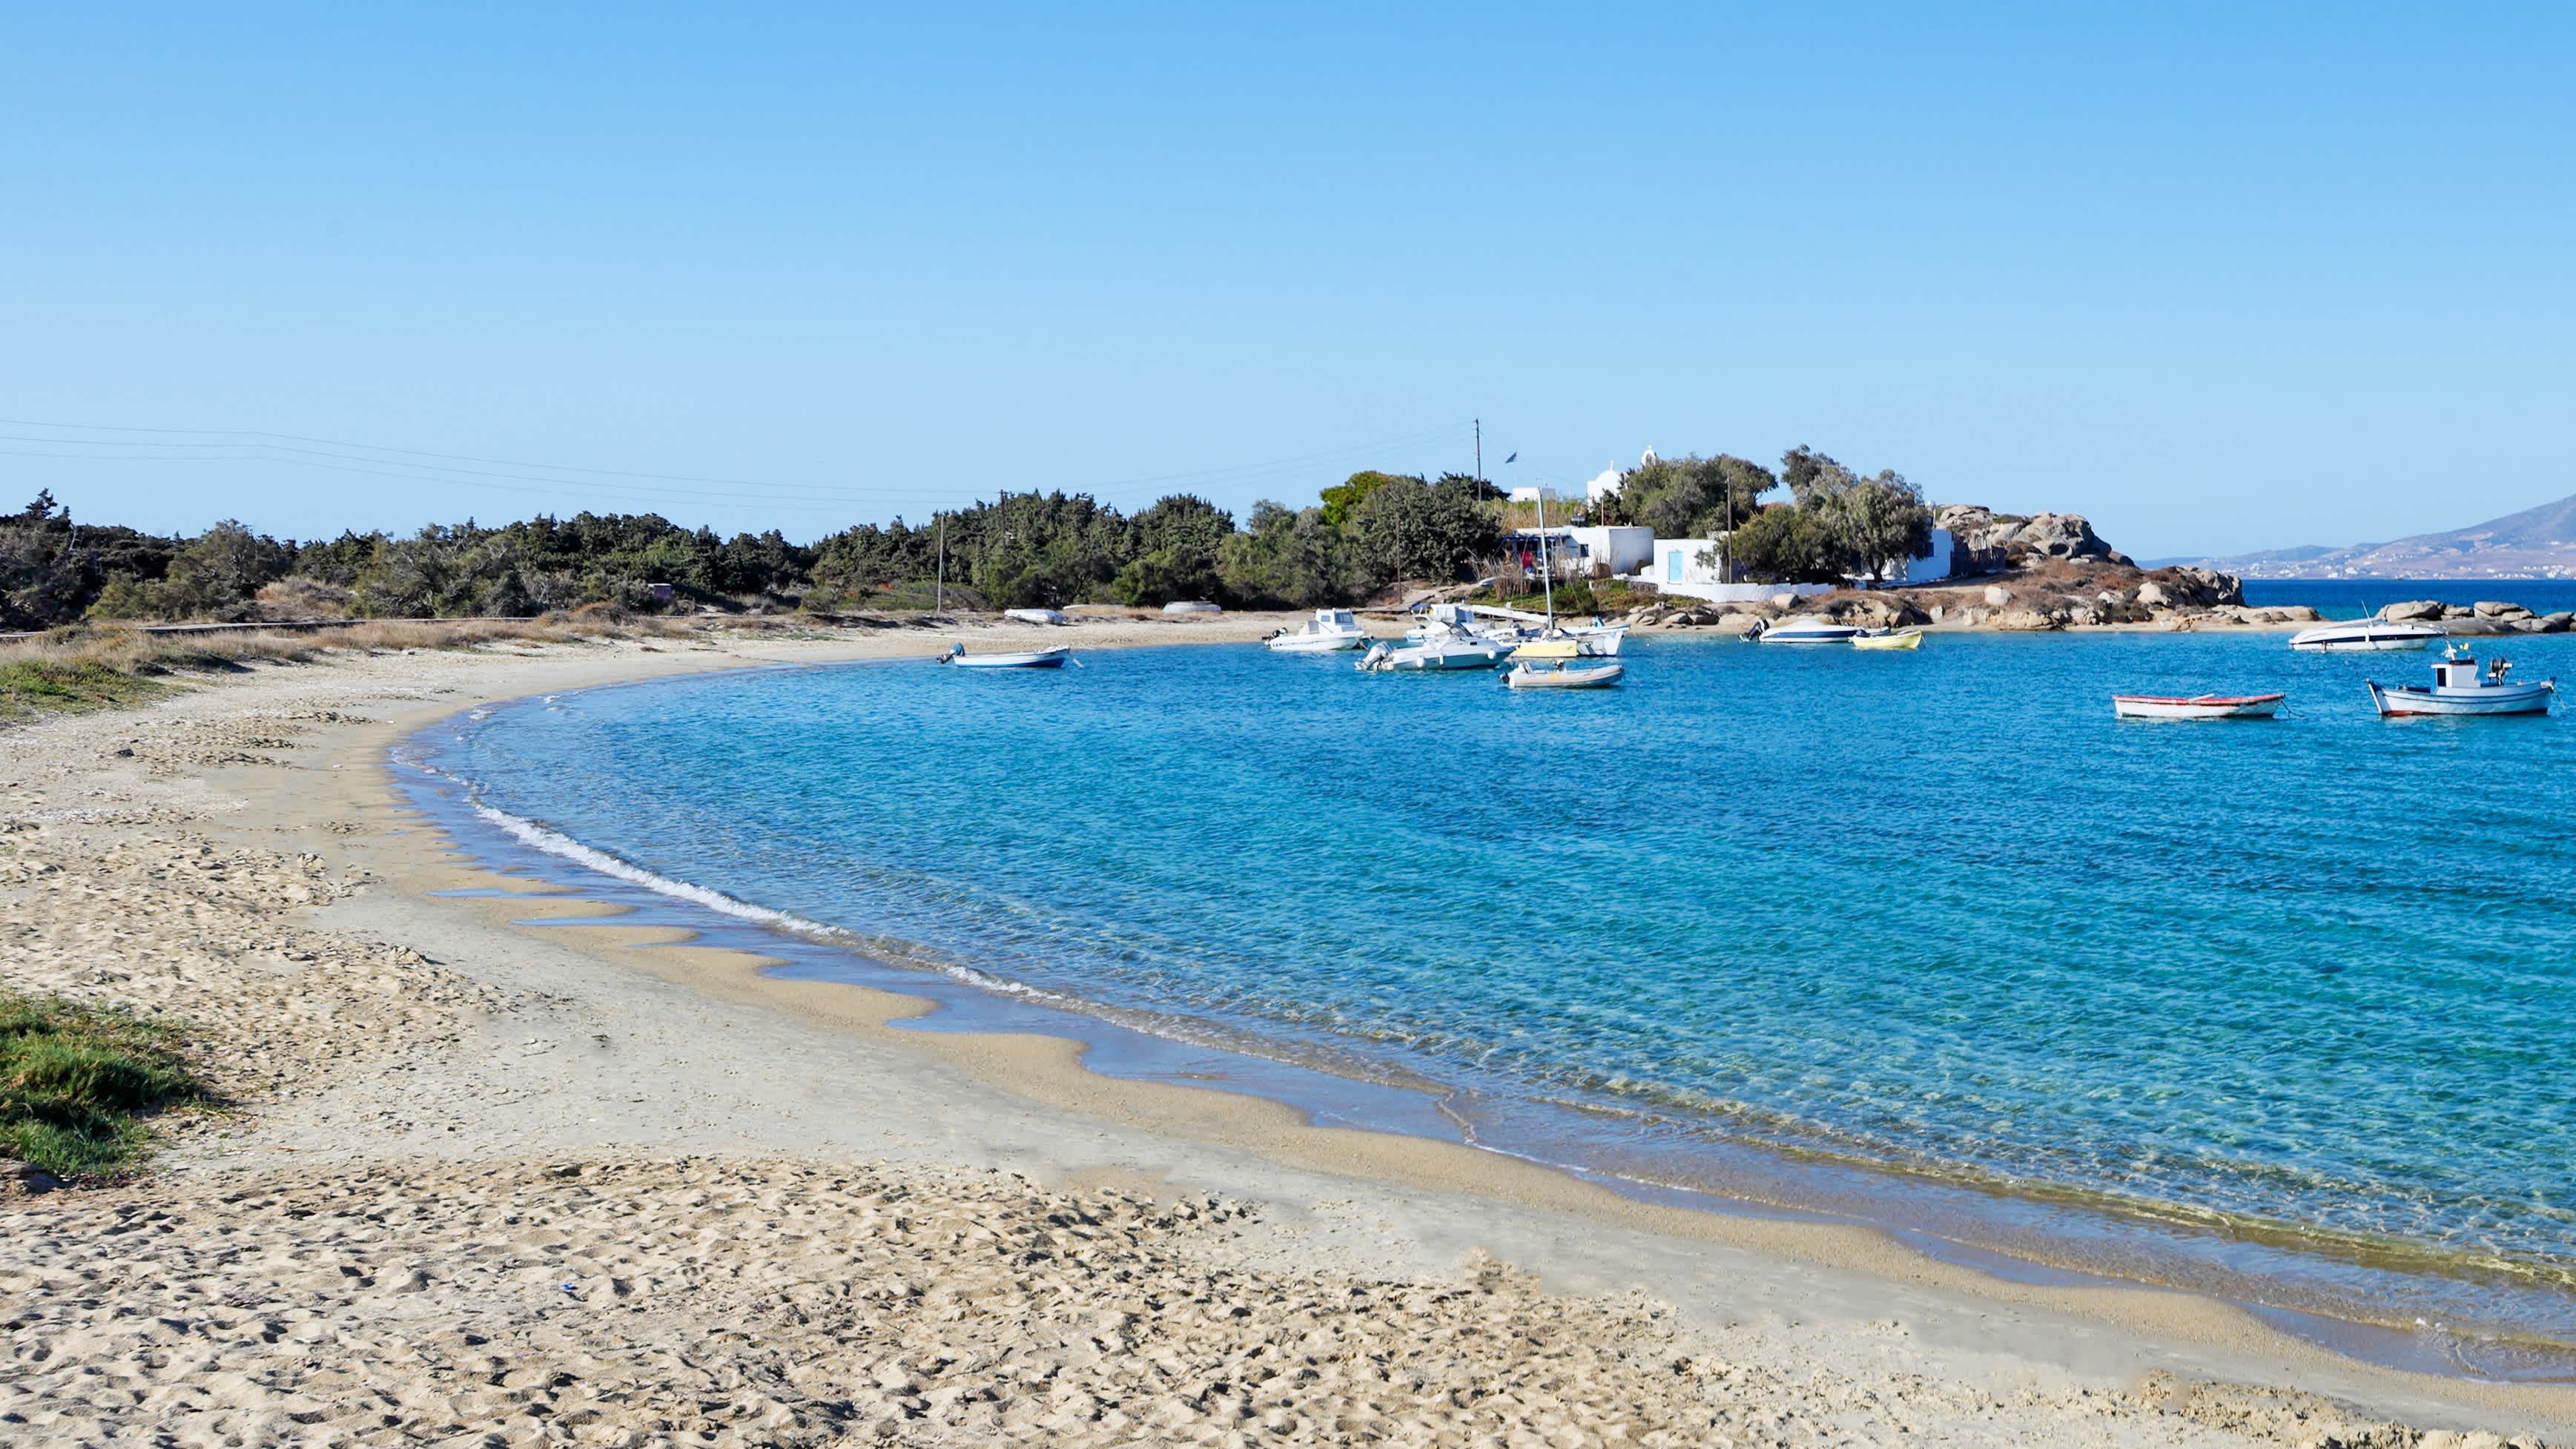 Vue sur la baie d'Agia Anna avec une plage de sable et des bateaux sur l'eau bleue azur, à Naxos, en Grèce.